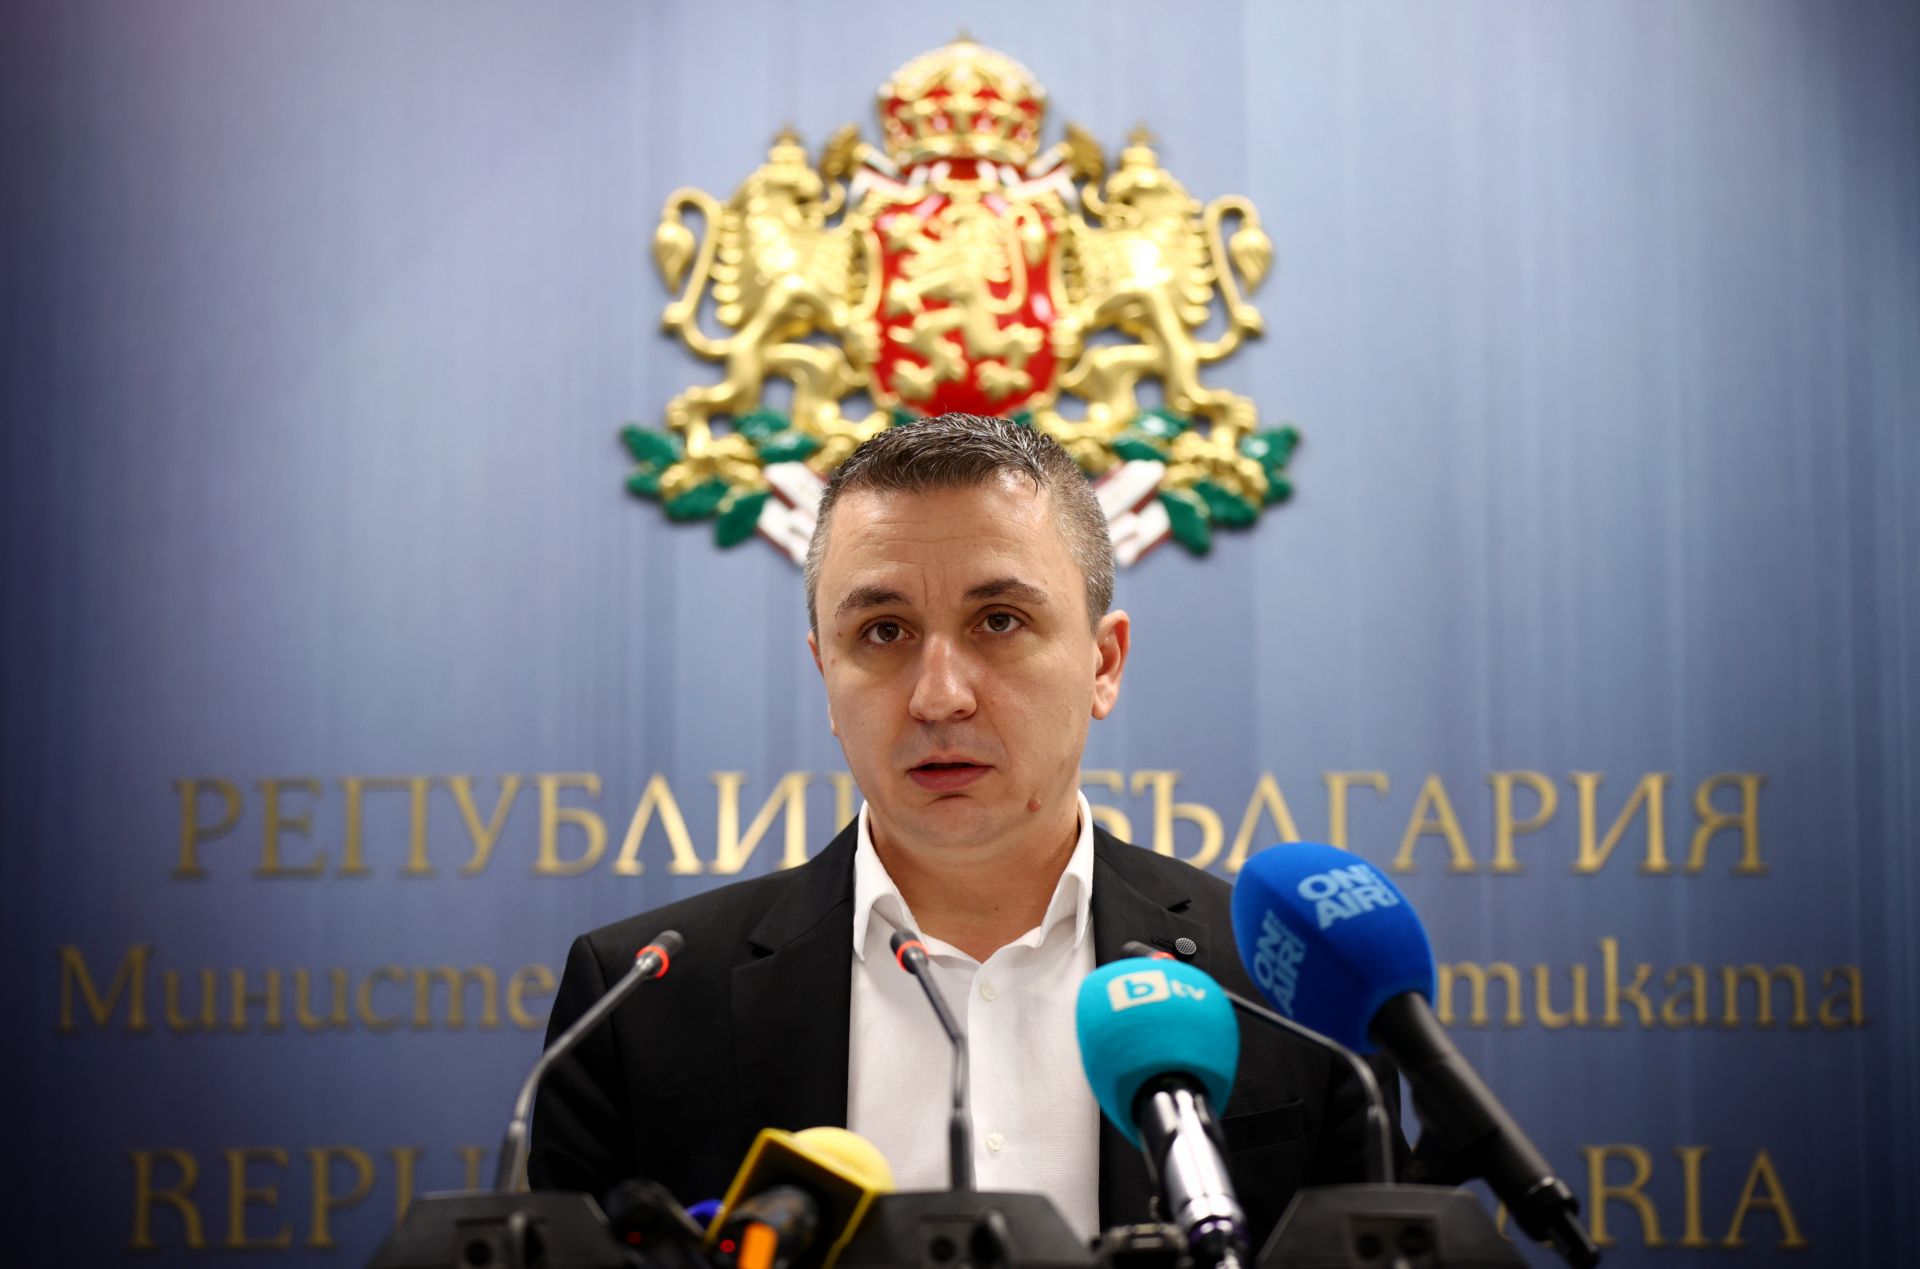 Всички сделки са в Газов хъб Балкан и може да се проследят, обяви министър Николов